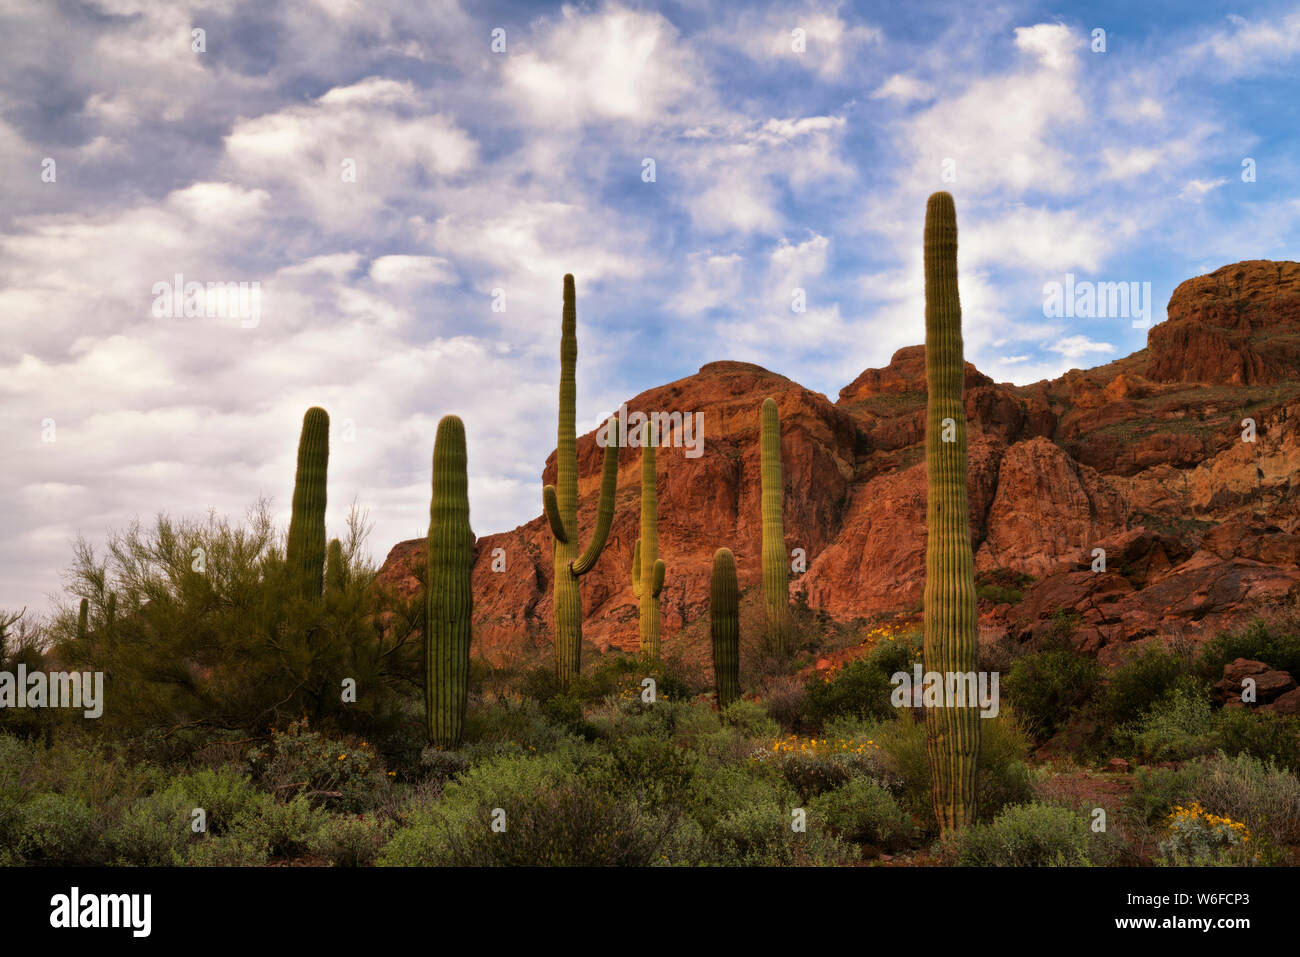 Le tuyau d'orgue armés prospèrent cactus de l'Arizona le long de frontière avec le Mexique le plus au sud dans le désert de Sonora de tuyau d'Orgue Monument Nat Cactus. Banque D'Images